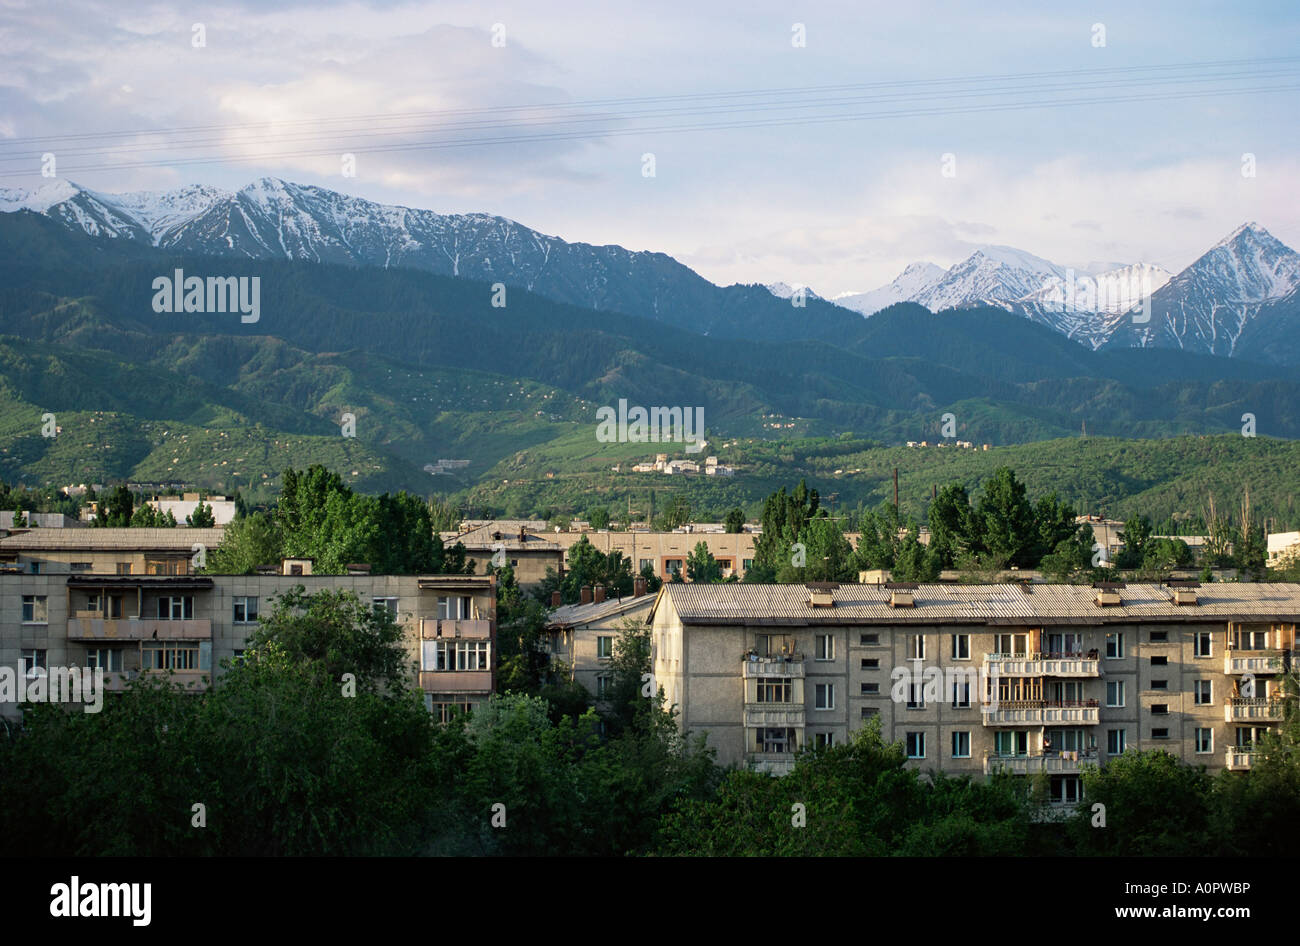 City Apartments Alma Ata et Kungey Ala trop montagnes Kazakstan Asie centrale Asie Banque D'Images